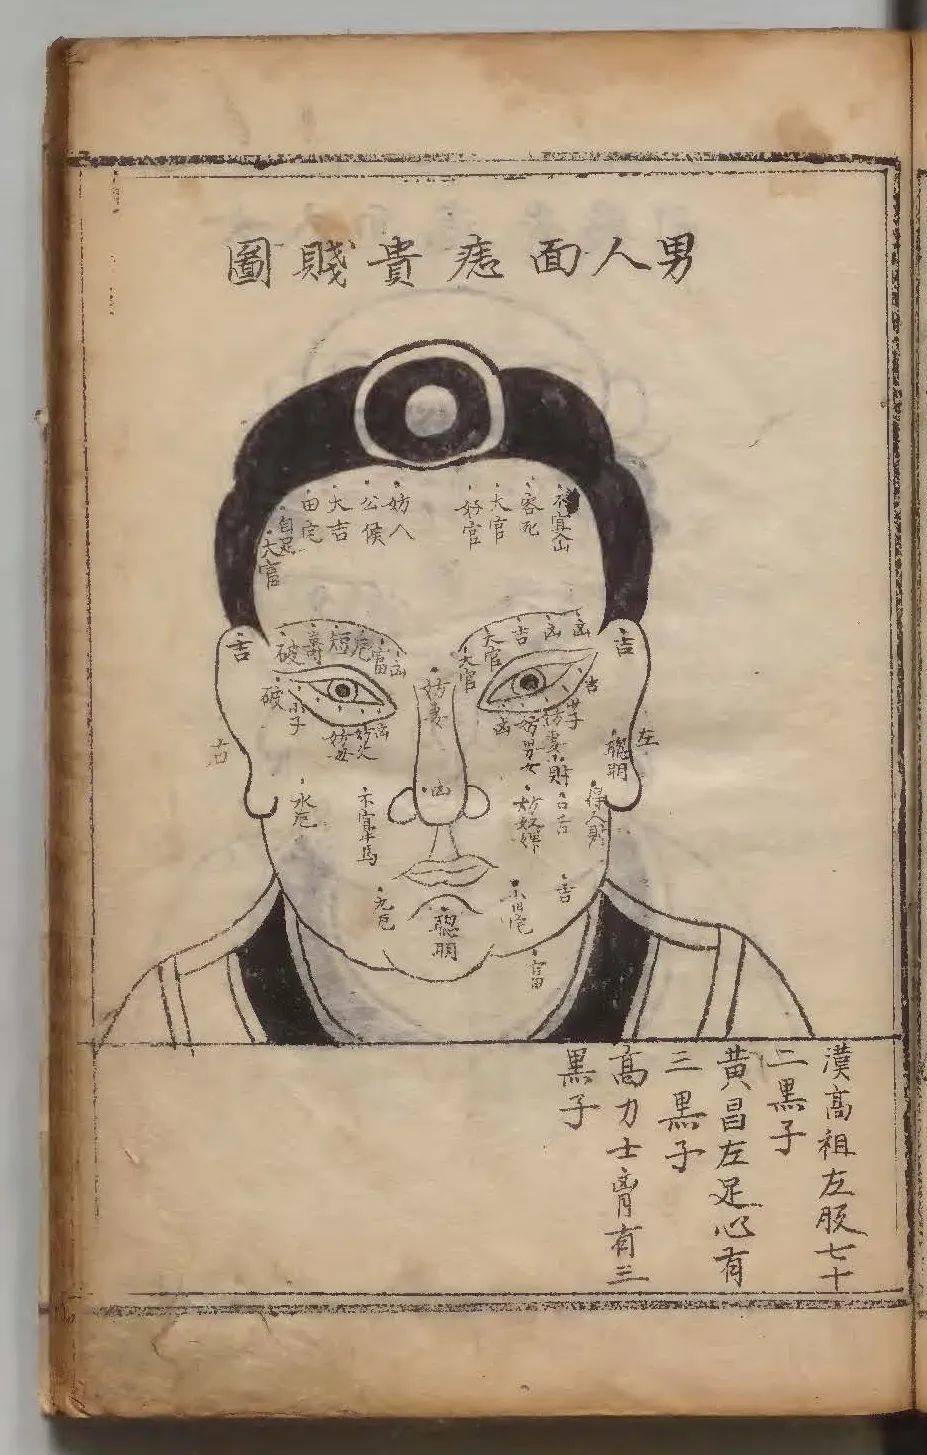 1590年朝鲜写本《新编相法五总龟》中的男人面痣贵贱图<br>